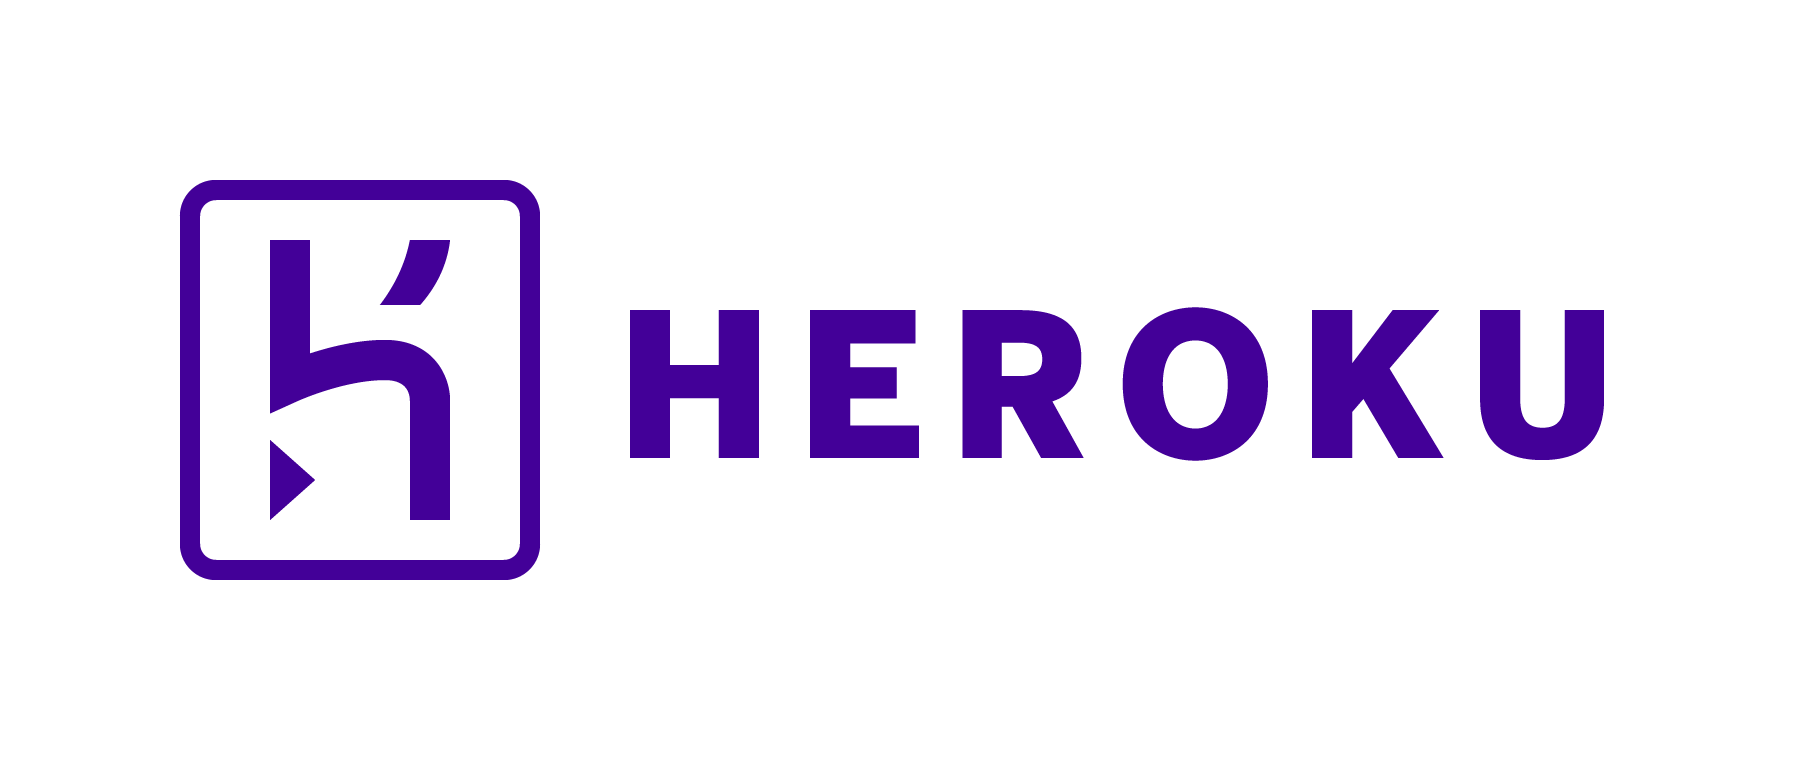 receiptify heroku app